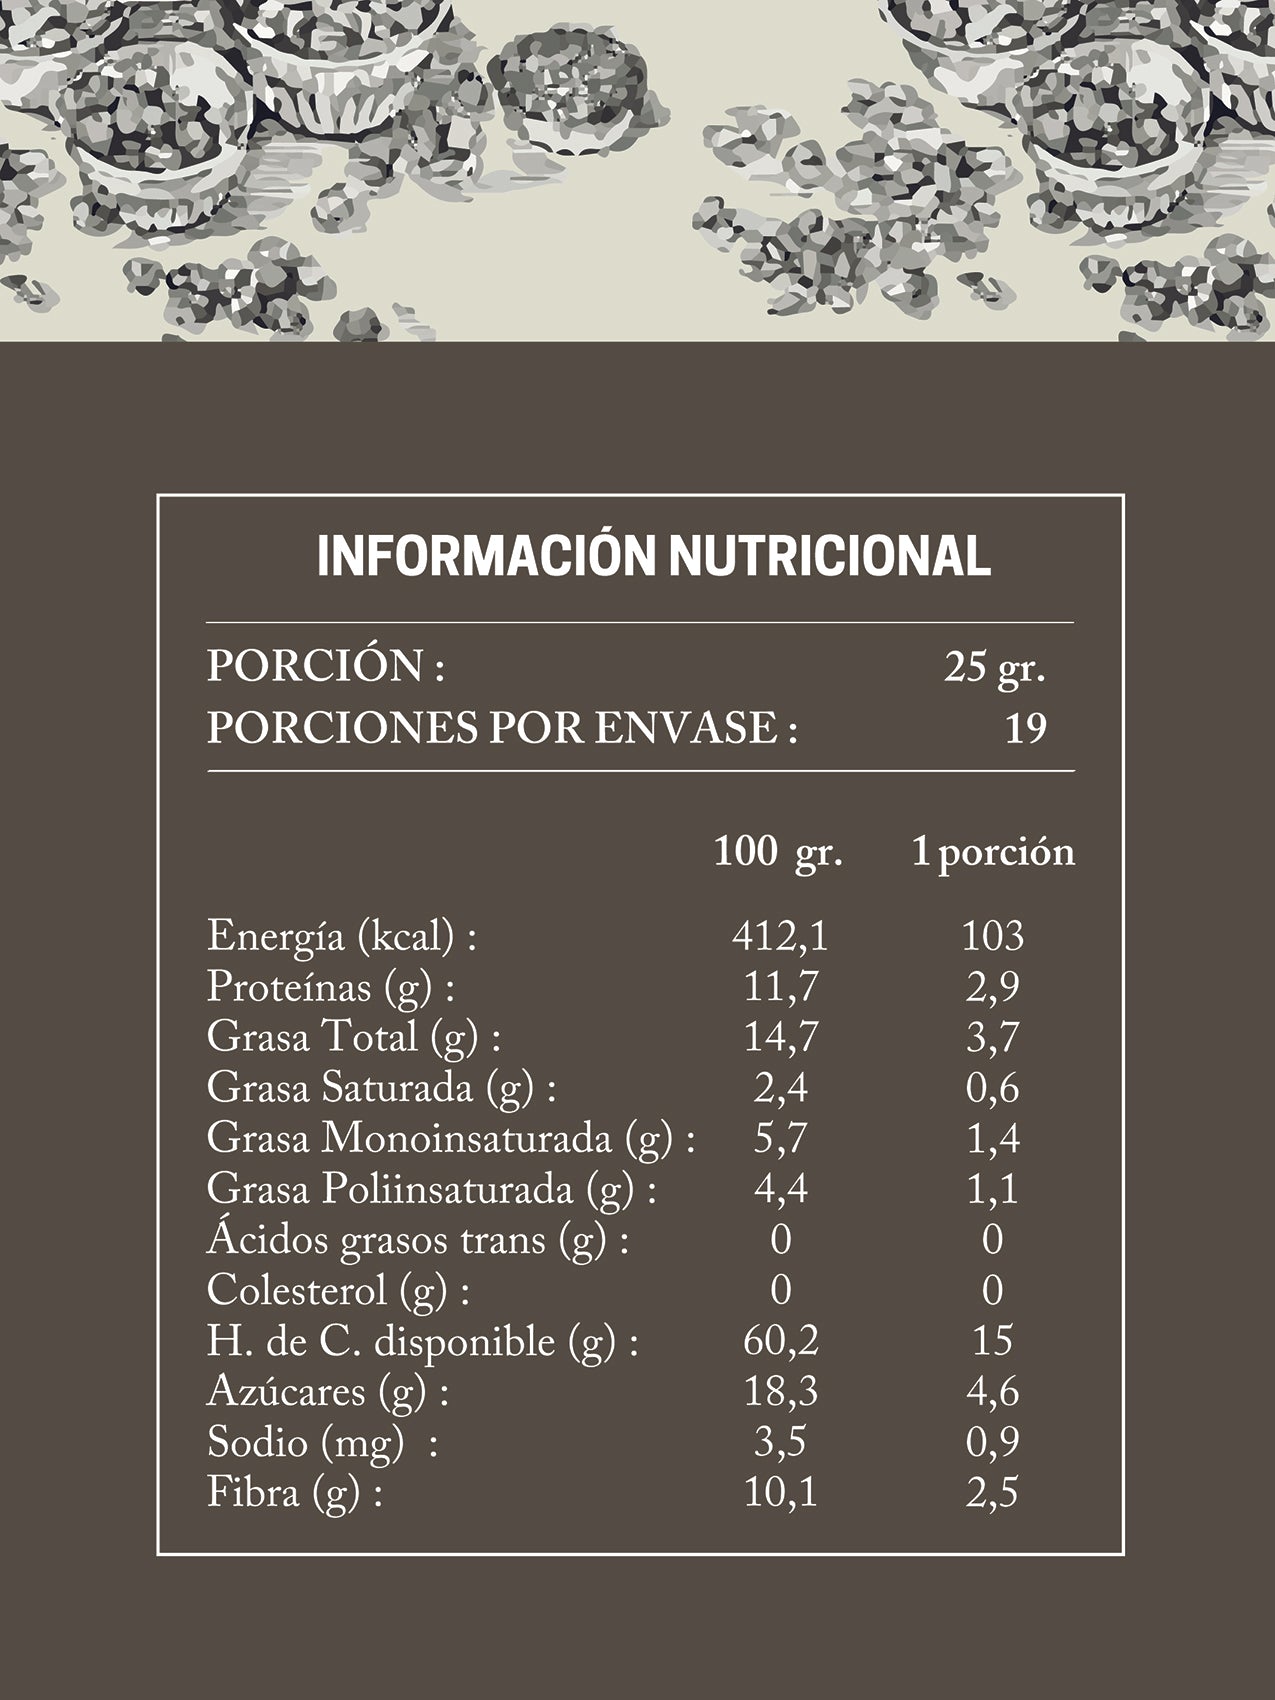 Da Oro - Recarga granola healthy nutella 475g